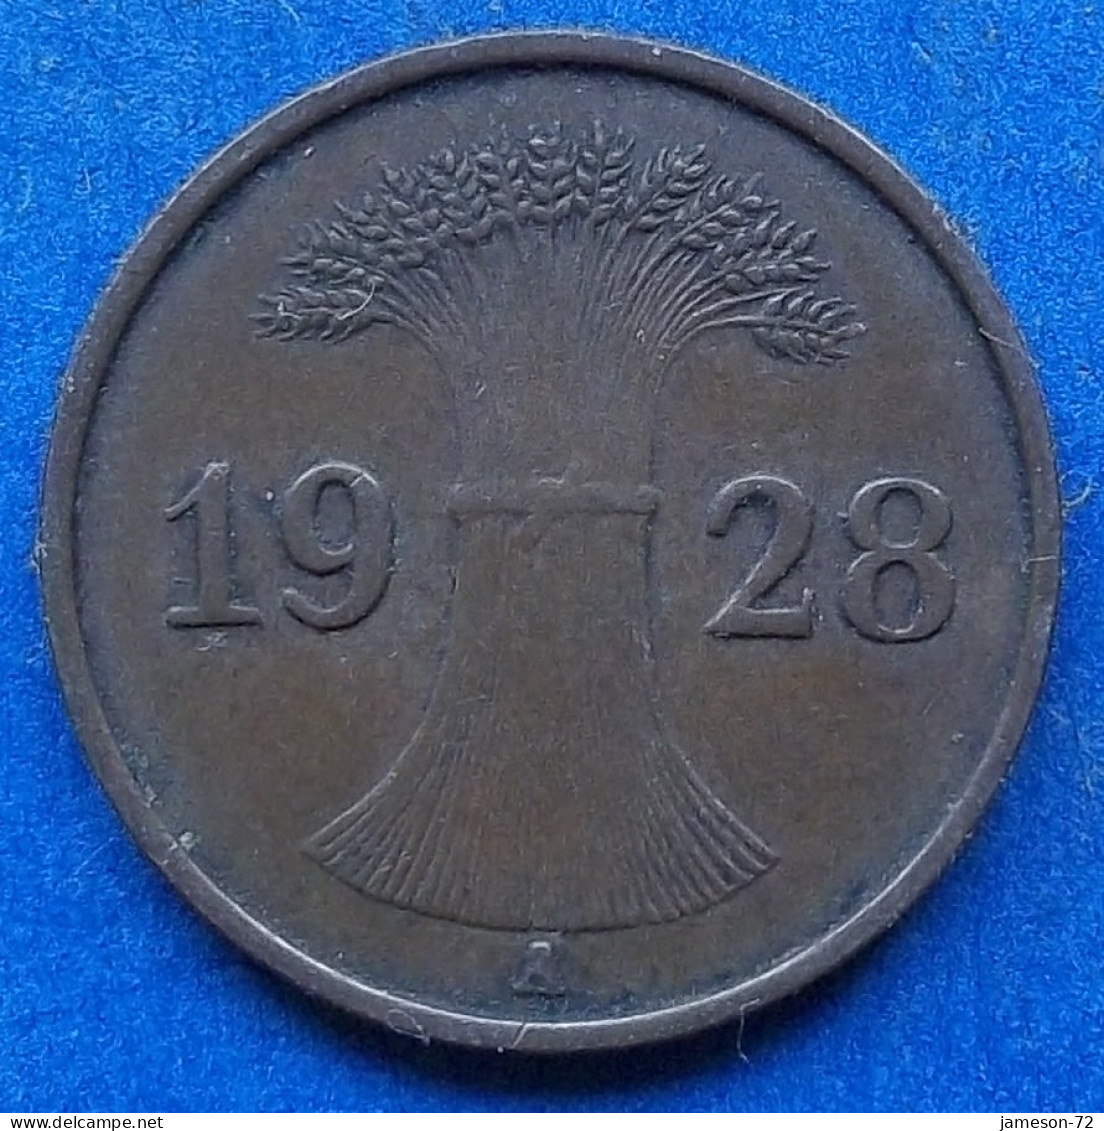 GERMANY - 1 Reichspfennig 1928 A KM# 37 Weimar Republic Reichsmark Coinage (1924-1938) - Edelweiss Coins - 1 Rentenpfennig & 1 Reichspfennig